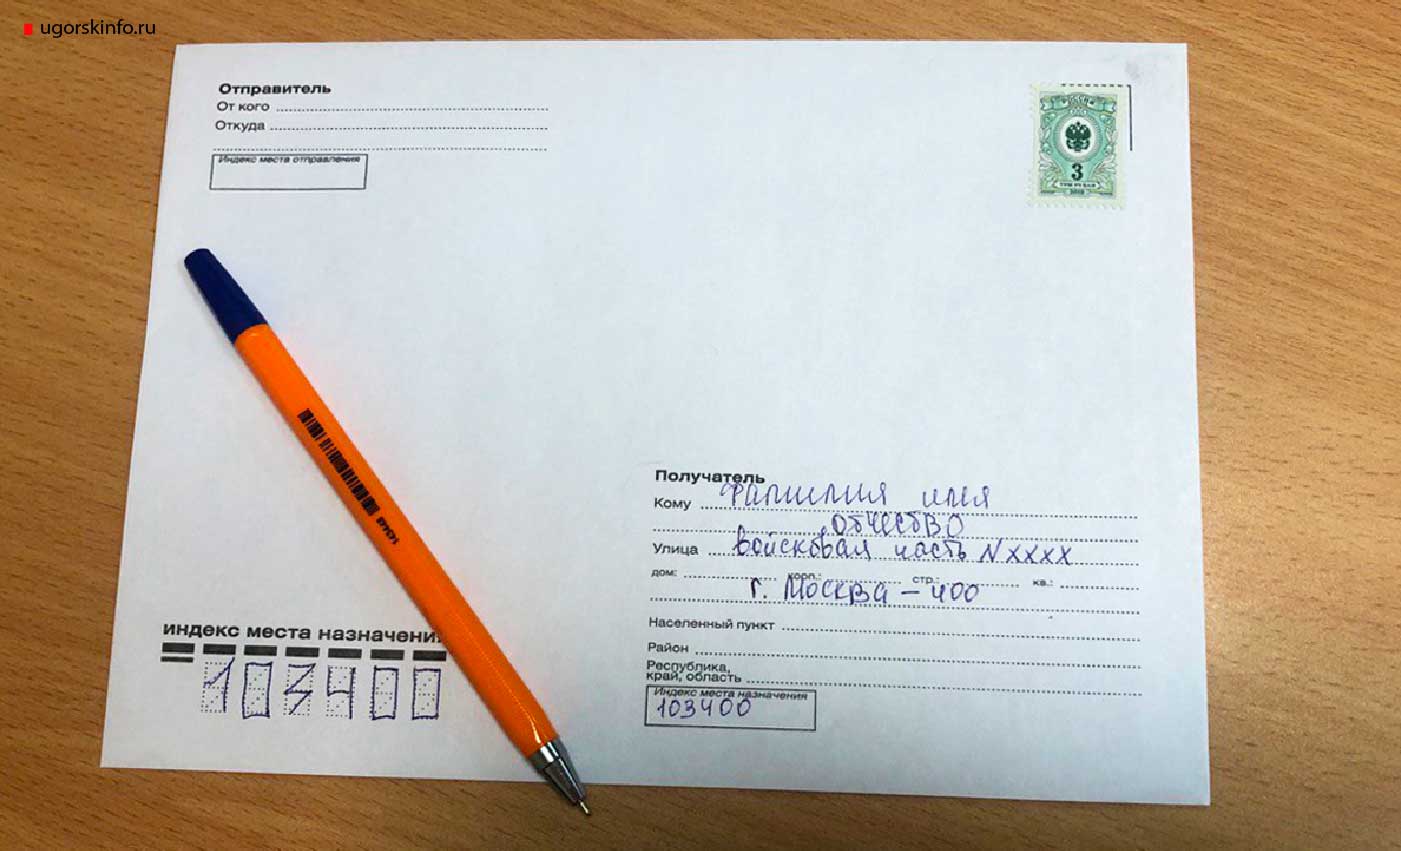 Родственники военнослужащих могут направлять свои письма, а также посылки через ближайшие отделения «Почты России» по адресу: 103400, город Москва-400, номер воинской части.